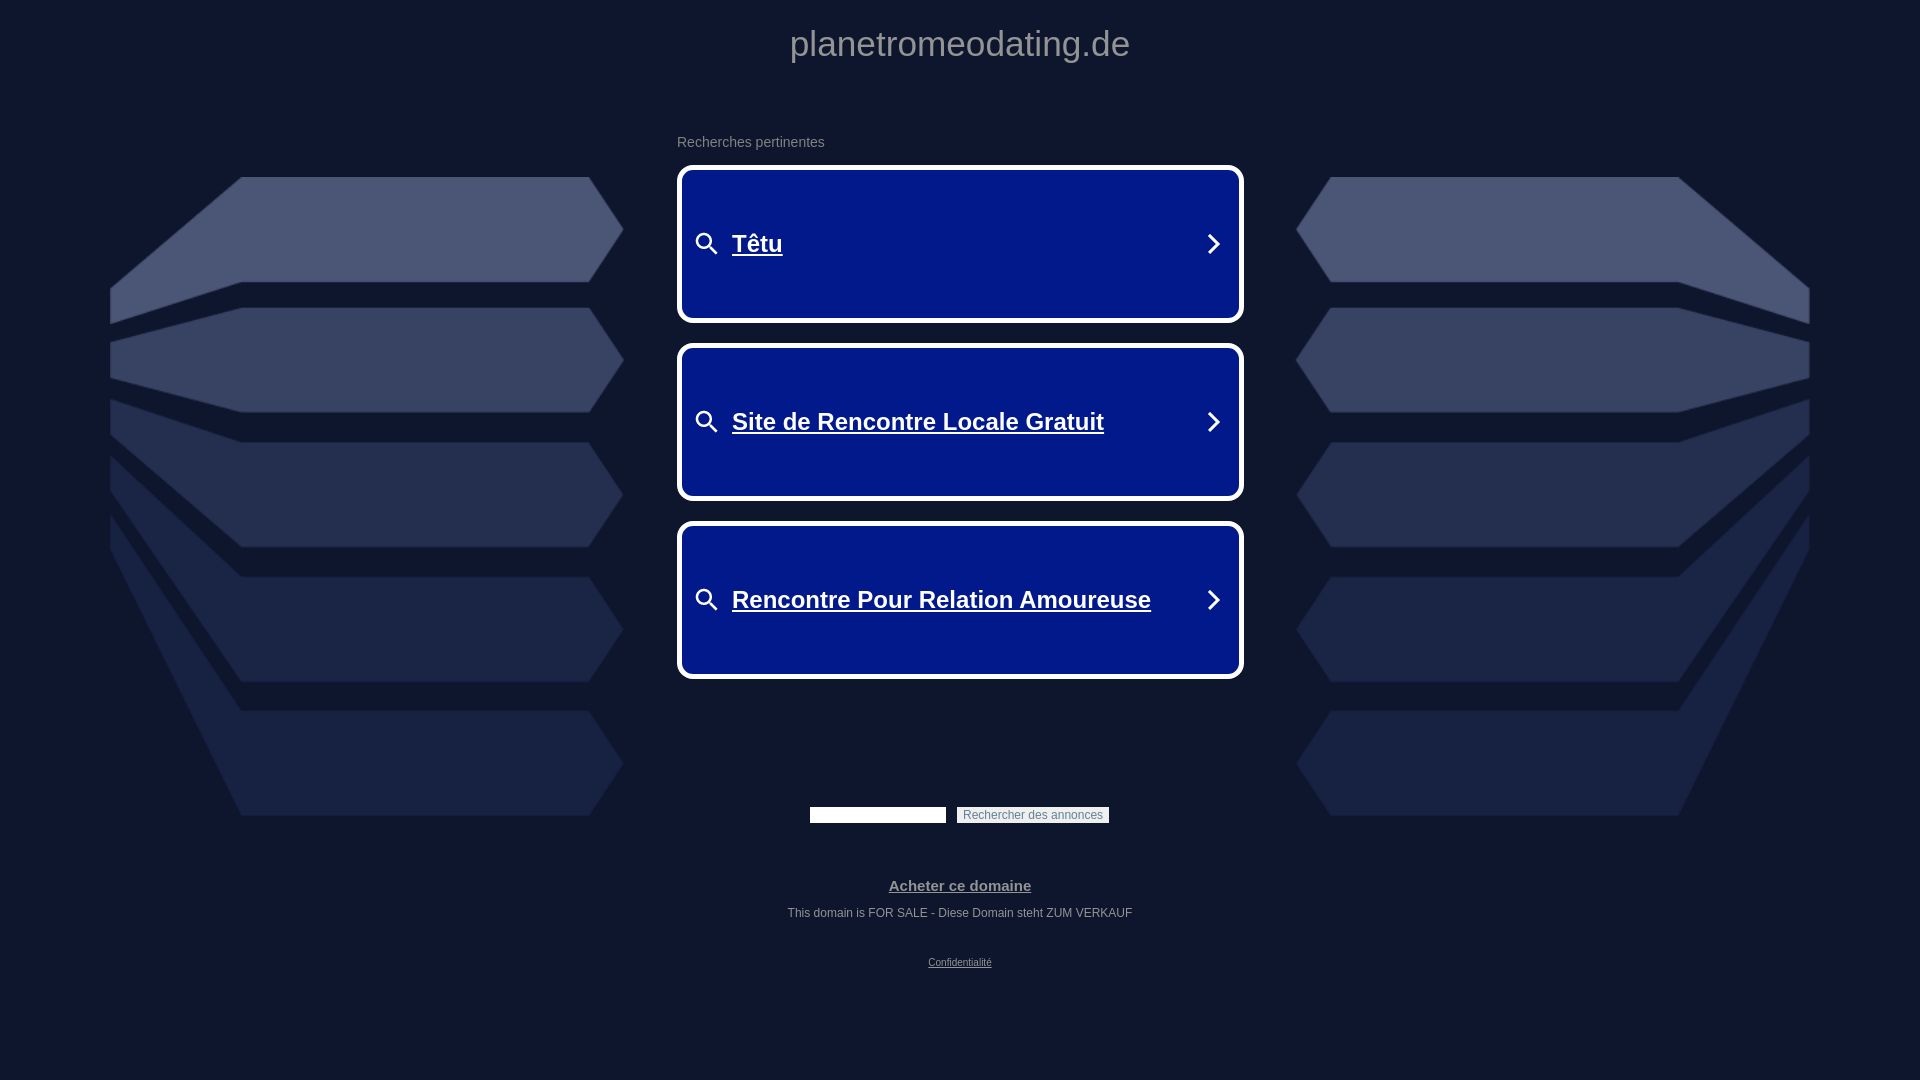 网站状态 planetromeodating.de 是  在线的